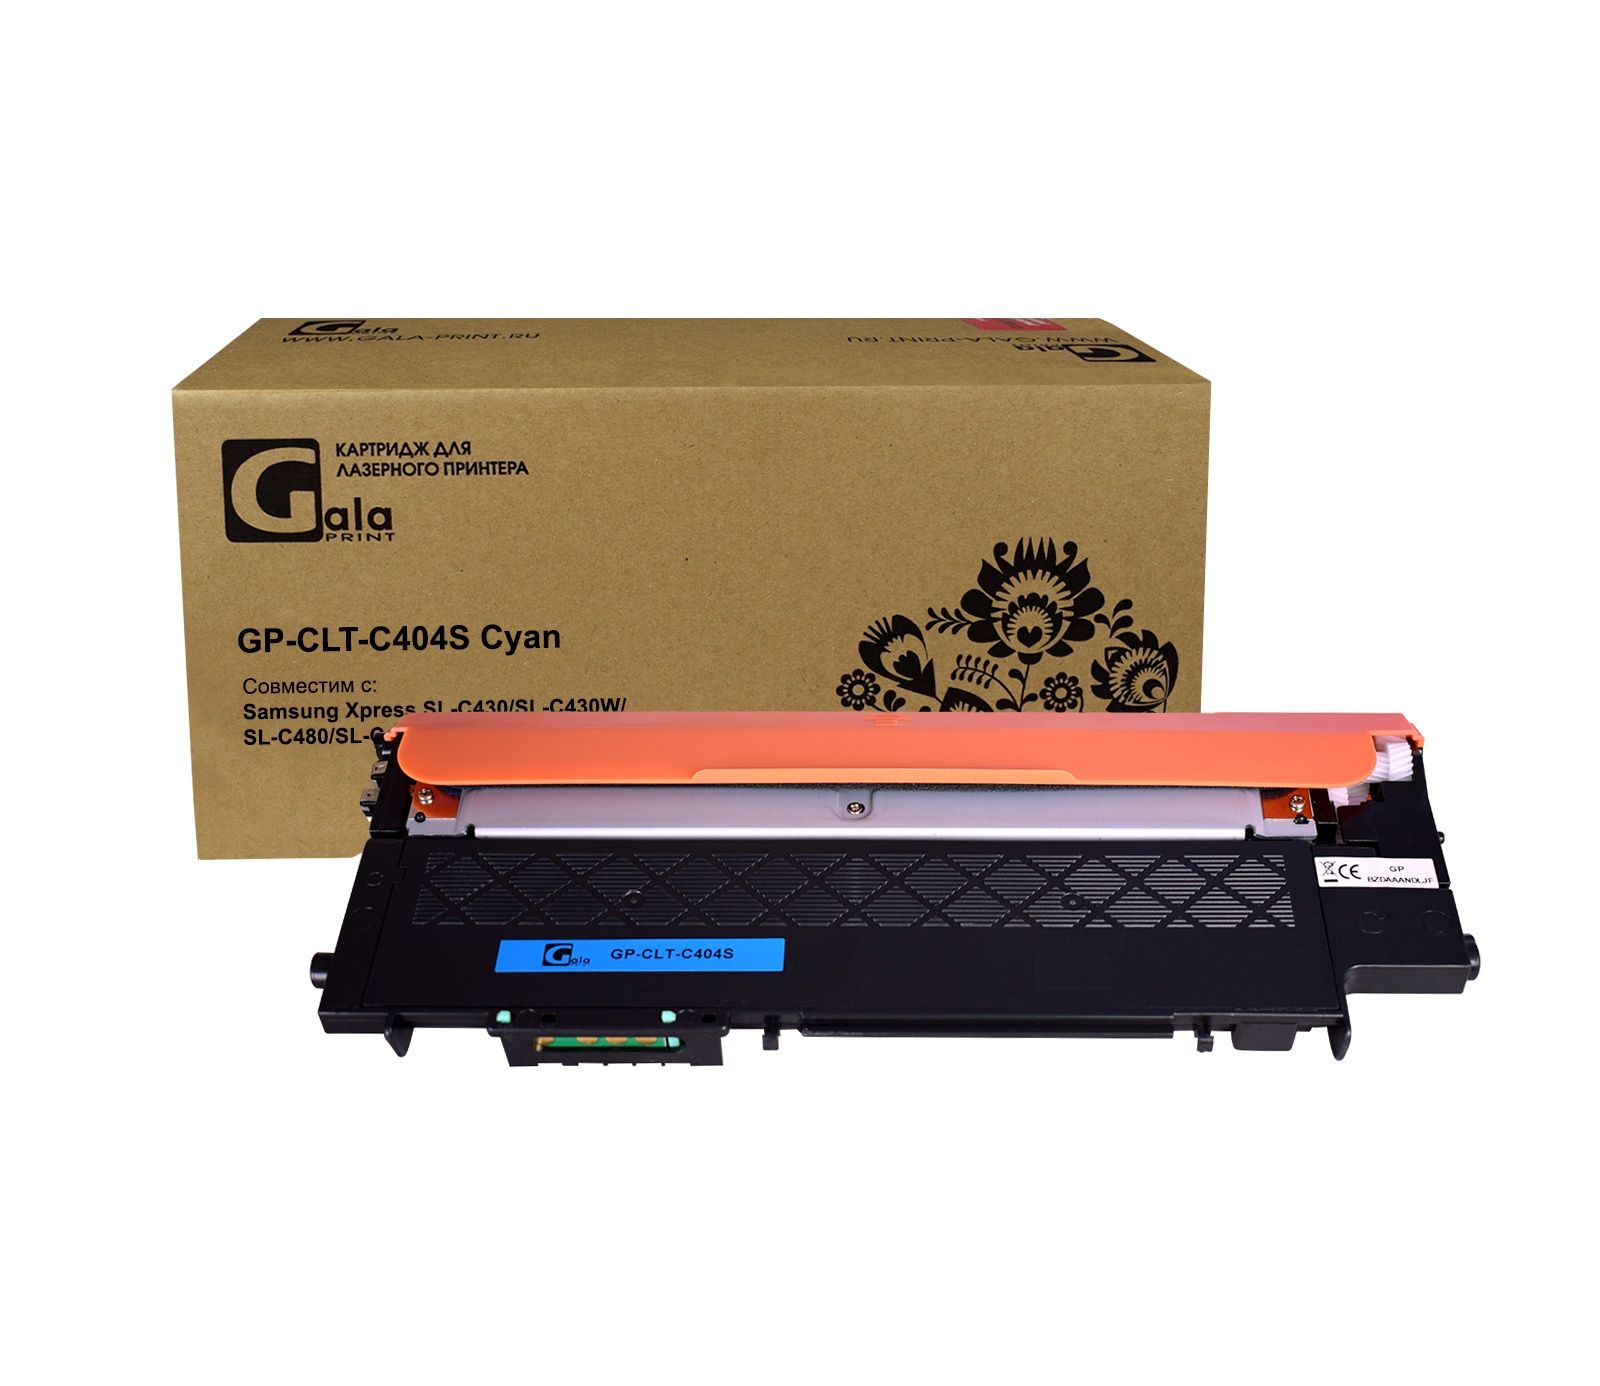 Картридж GP-CLT-C404S для принтеров Samsung Xpress SL-C430/SL-C430W/SL-C480/SL-C480W/C482/C483/C432/C433 Cyan 1000 копий GalaPrint